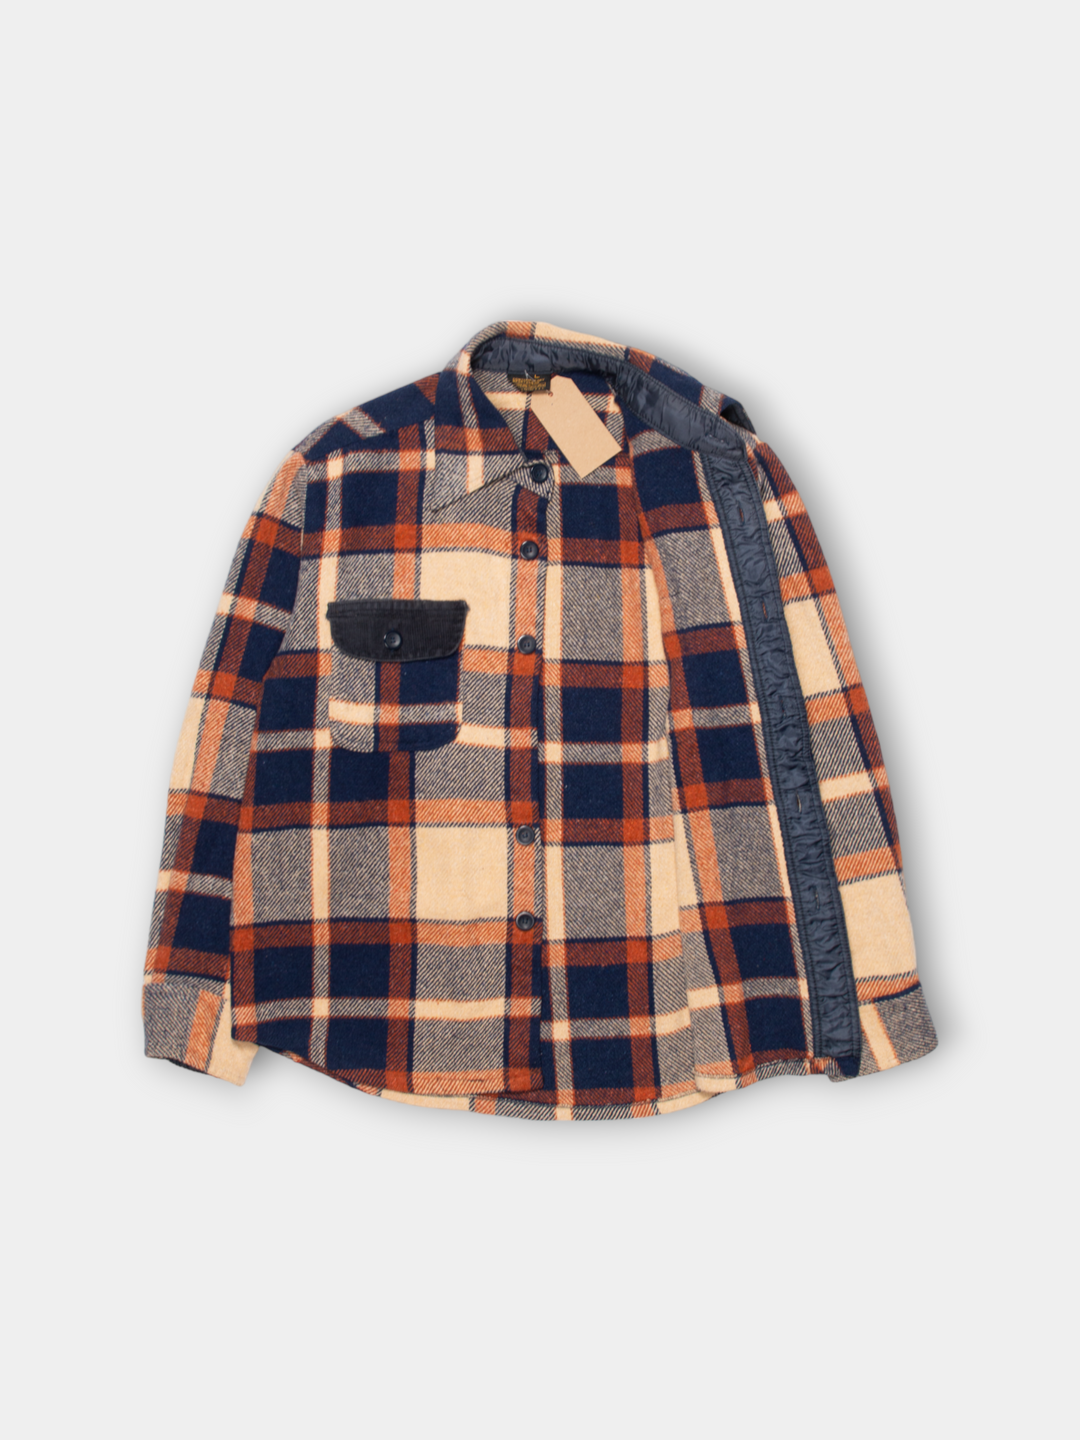 70s Sears Heavy Flannel Wool Shirt Jacket (L)